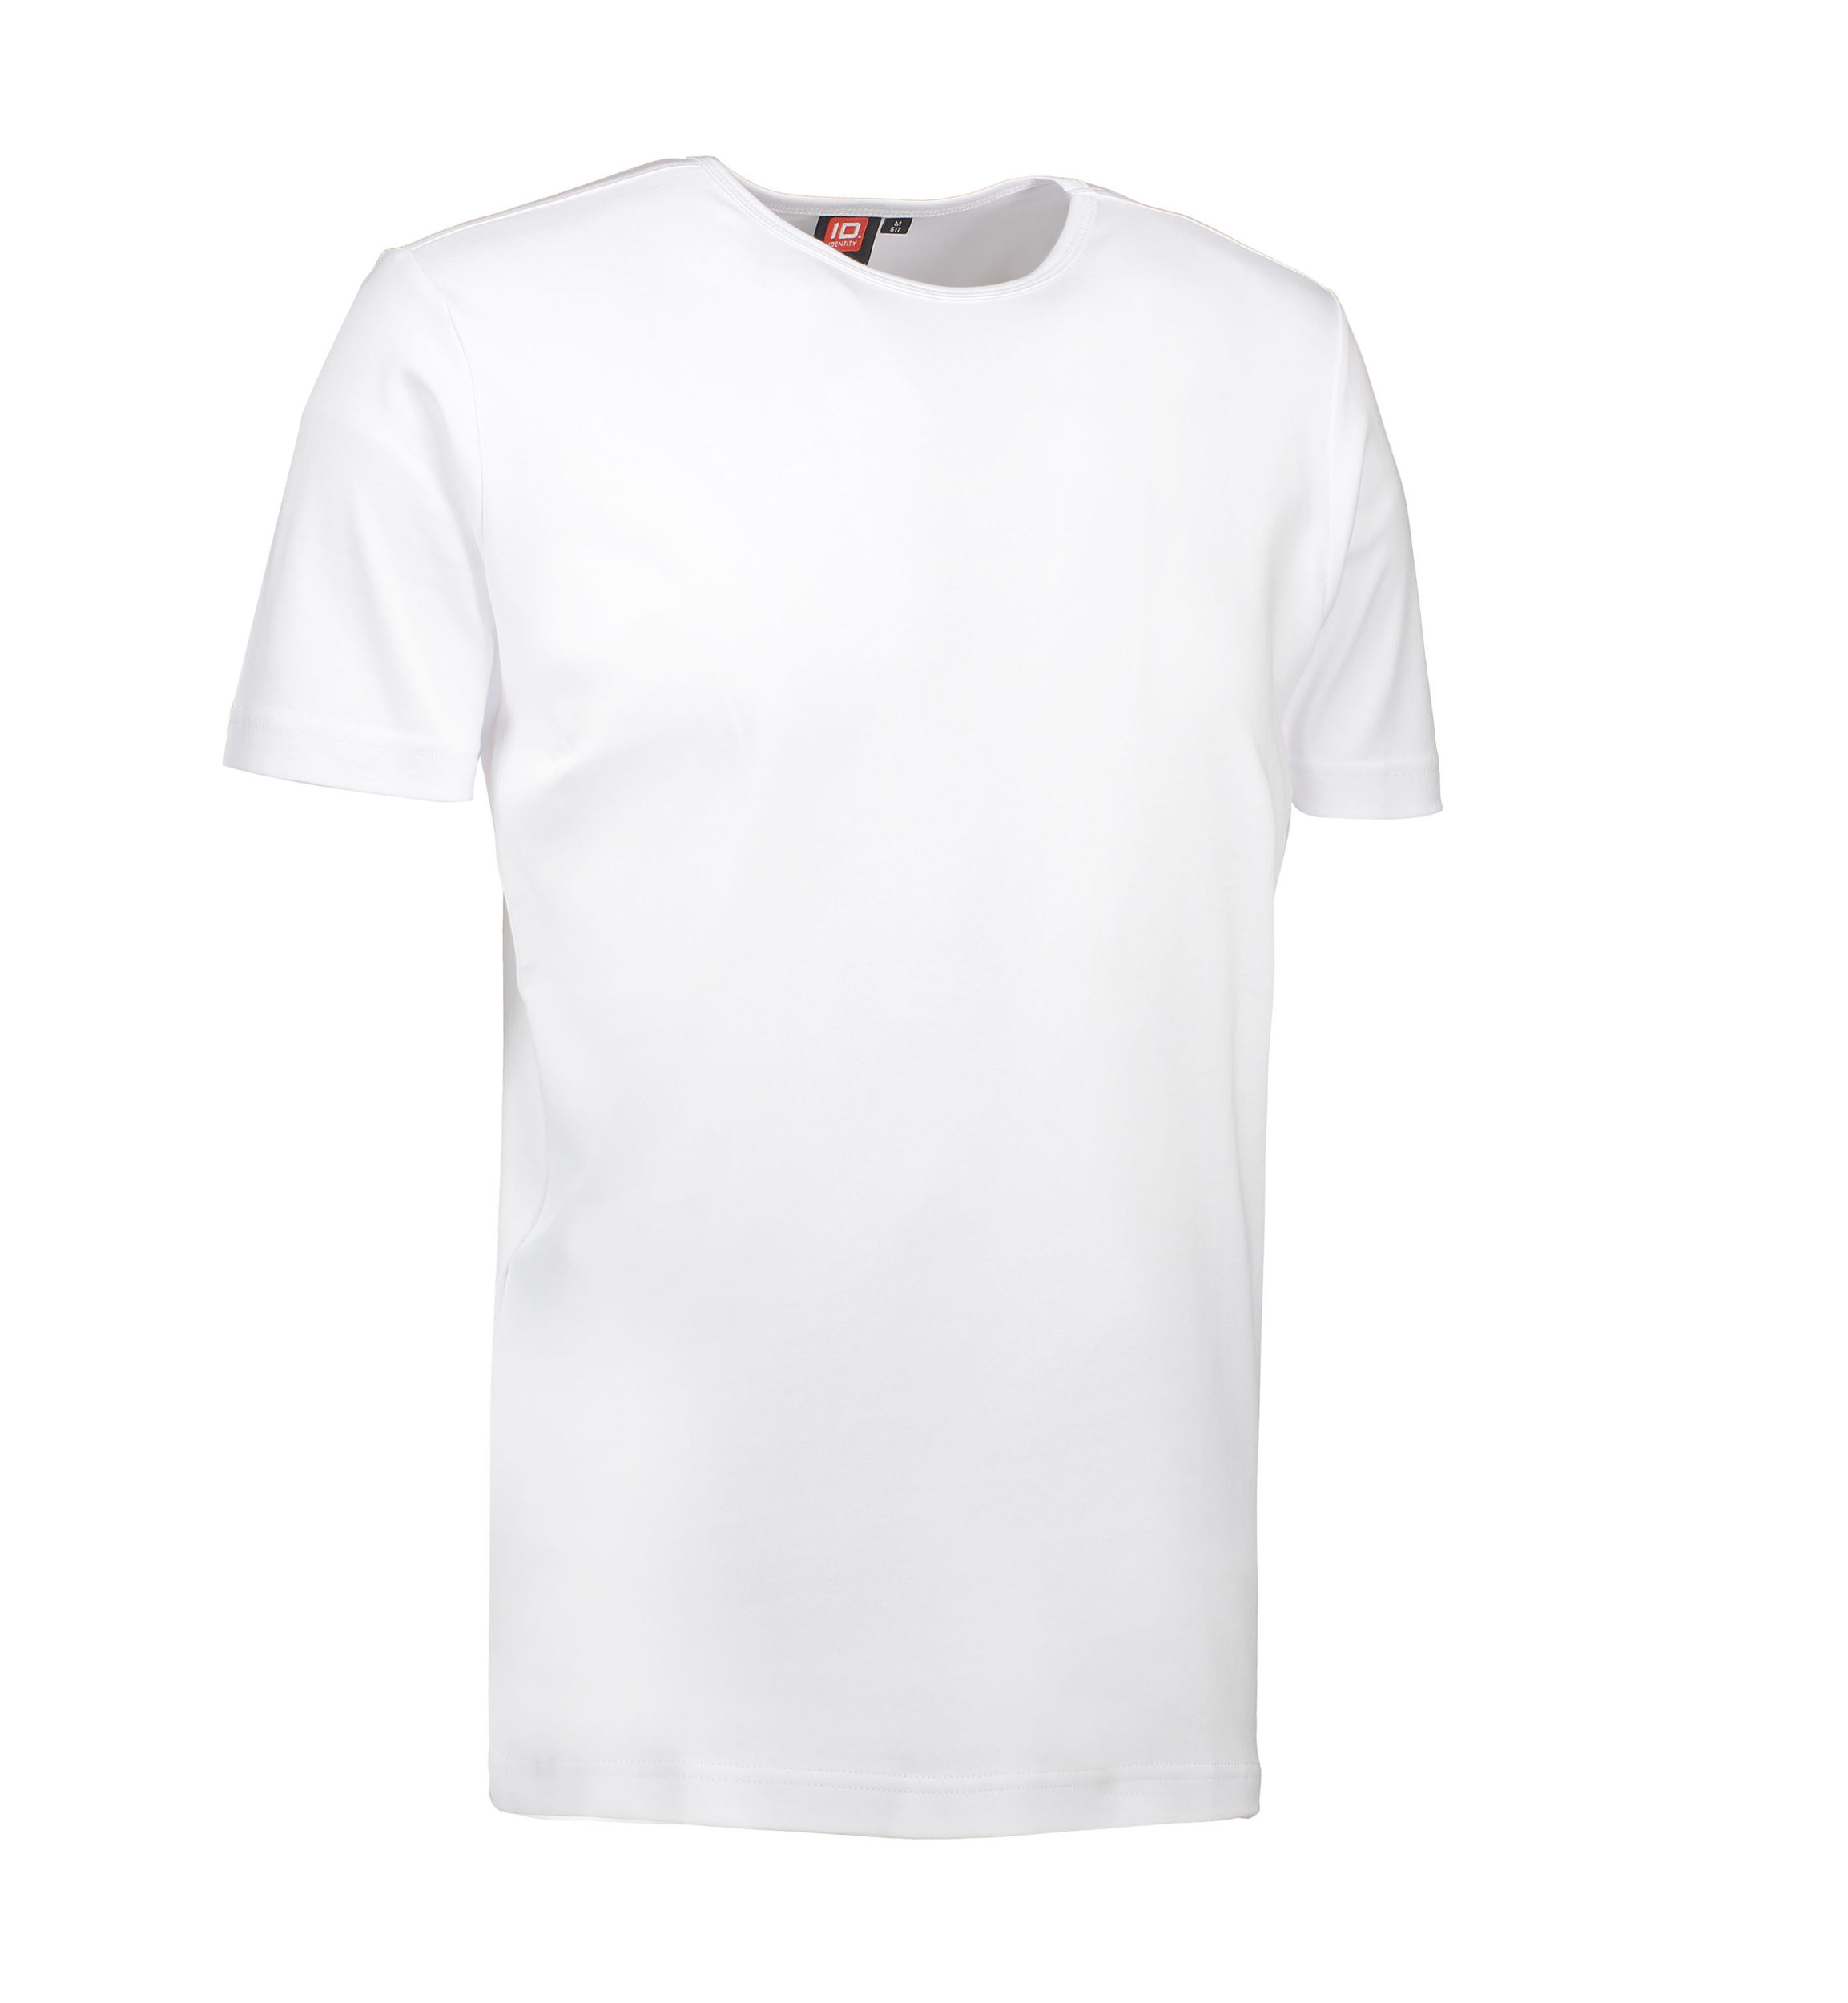 Billede af Hvid t-shirt med rund hals til mænd - S hos Sygeplejebutikken.dk